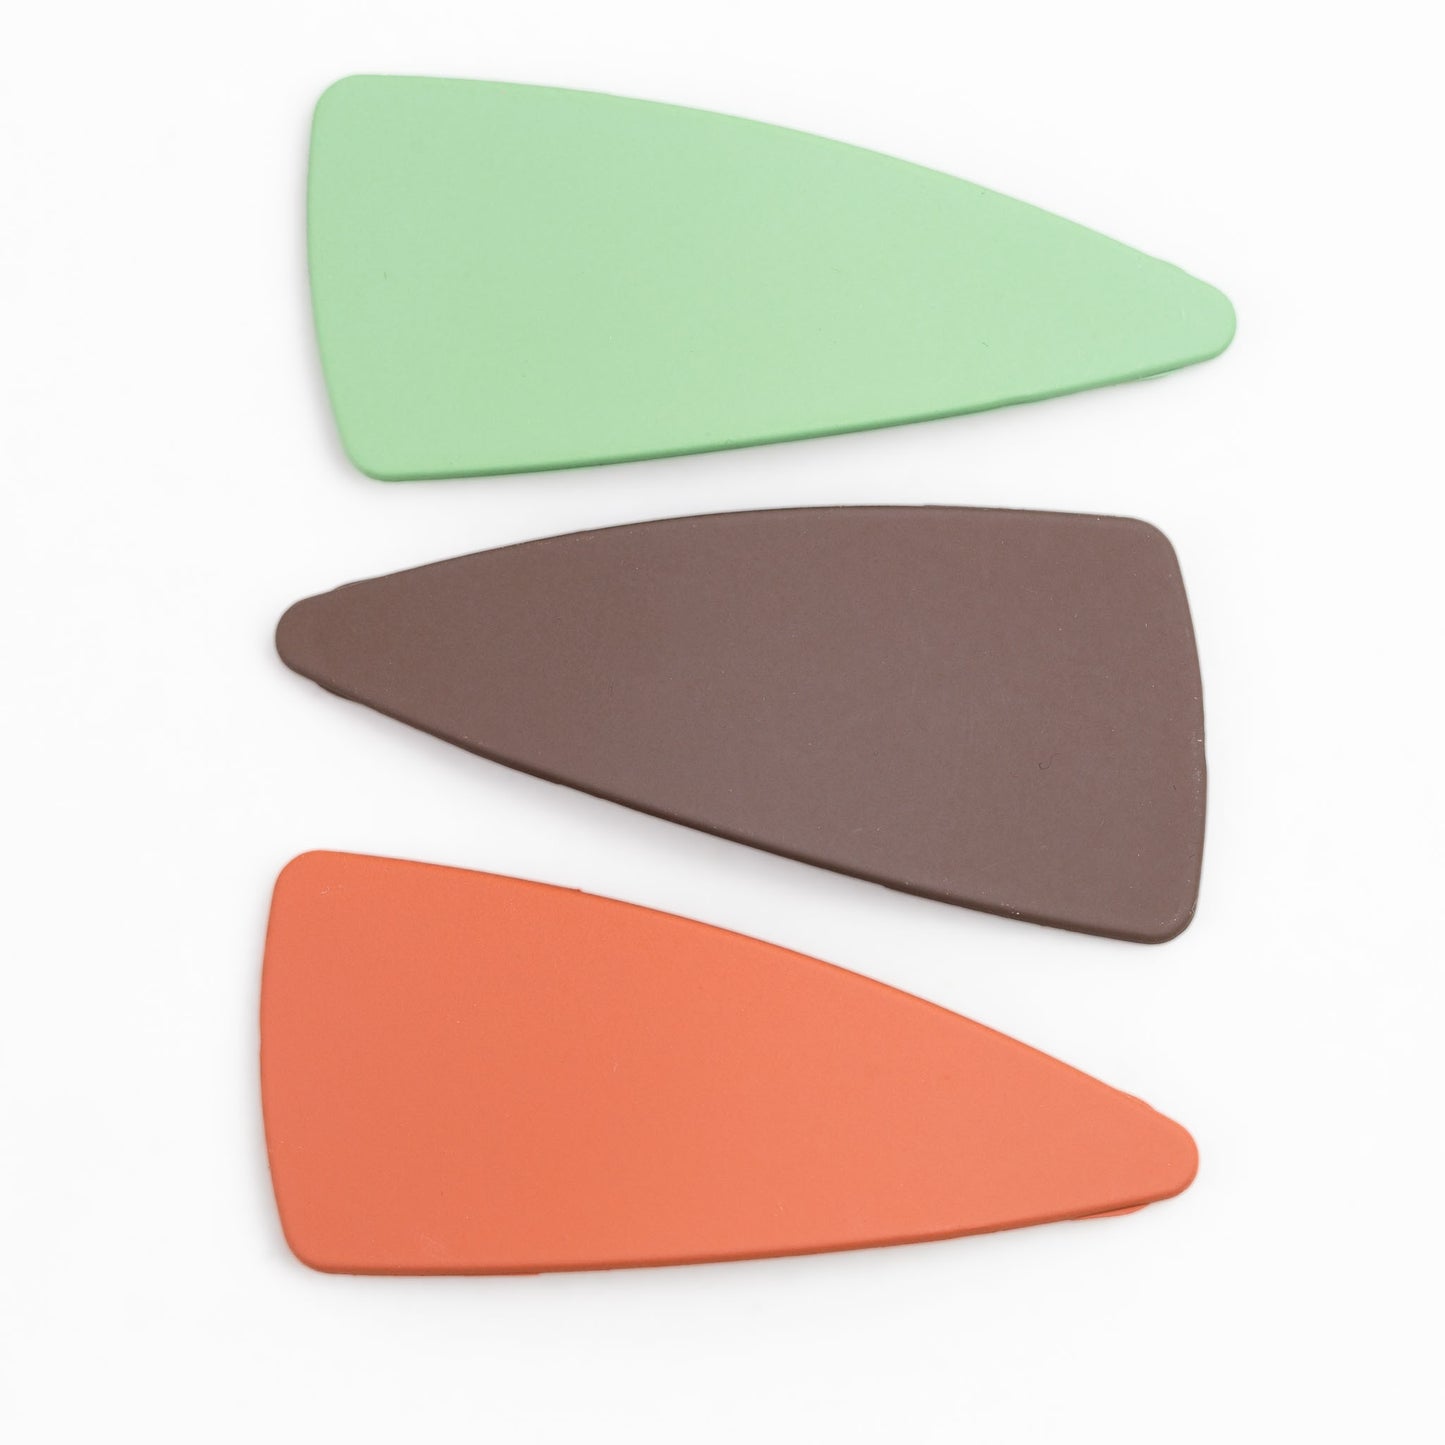 Agrafe de păr click în formă triunghiulară cu textură fină de silicon, set 3 buc - Maro, Portocaliu, Verde